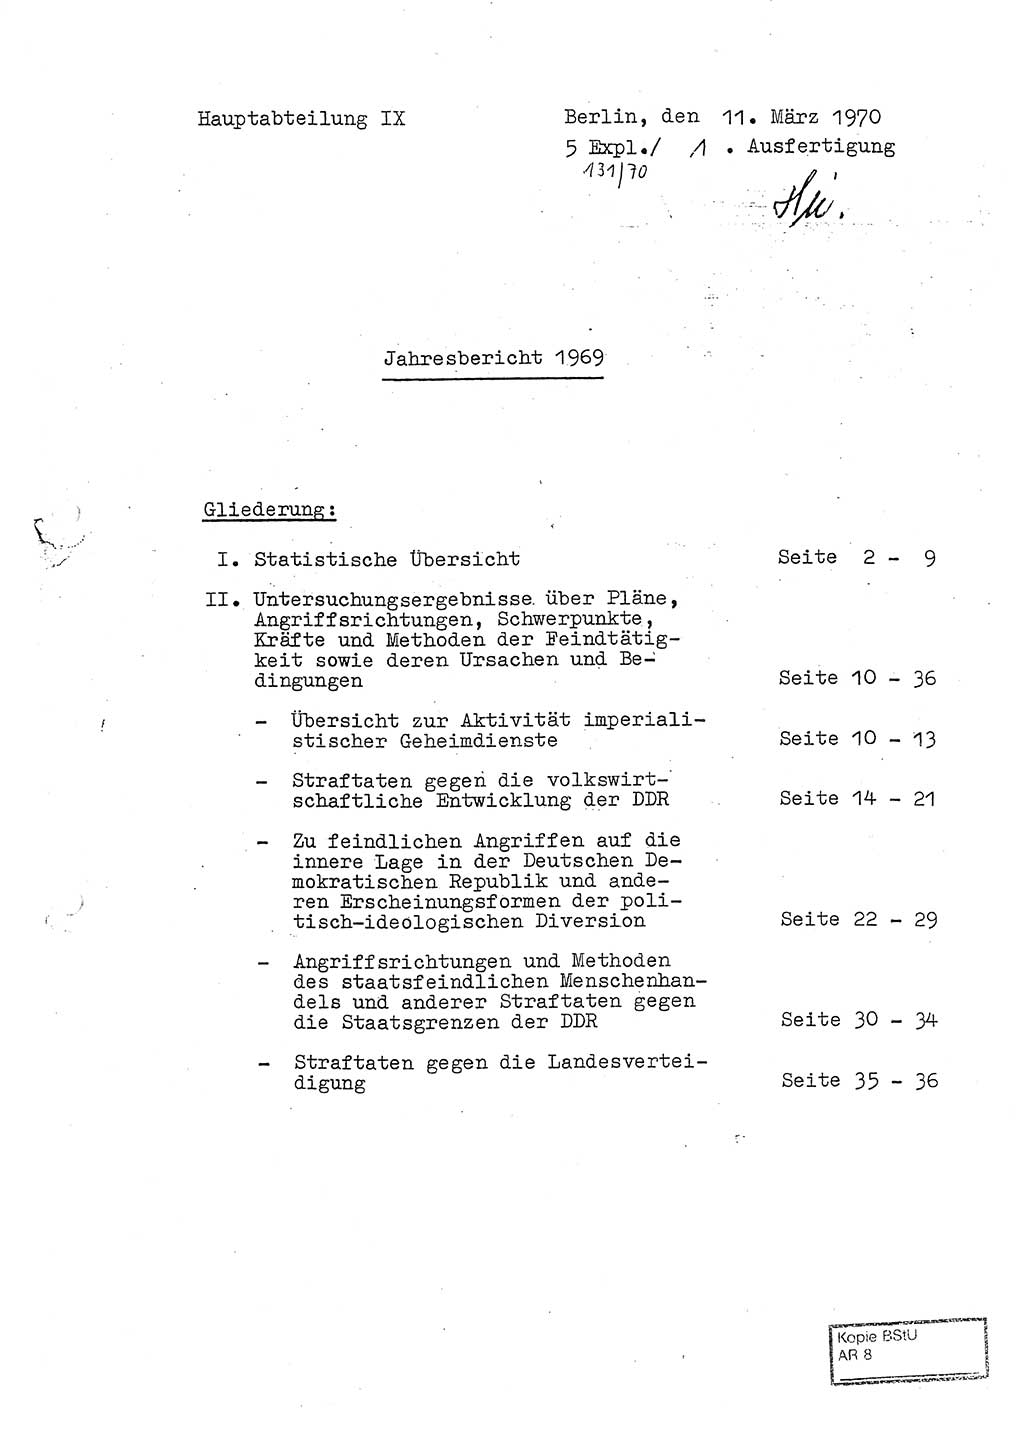 Jahresbericht der Hauptabteilung (HA) Ⅸ 1969 des Ministeriums für Staatssicherheit (MfS) der Deutschen Demokratischen Republik (DDR), Berlin 1970, Seite 1 (J.-Ber. MfS DDR HA Ⅸ /69 1970, S. 1)